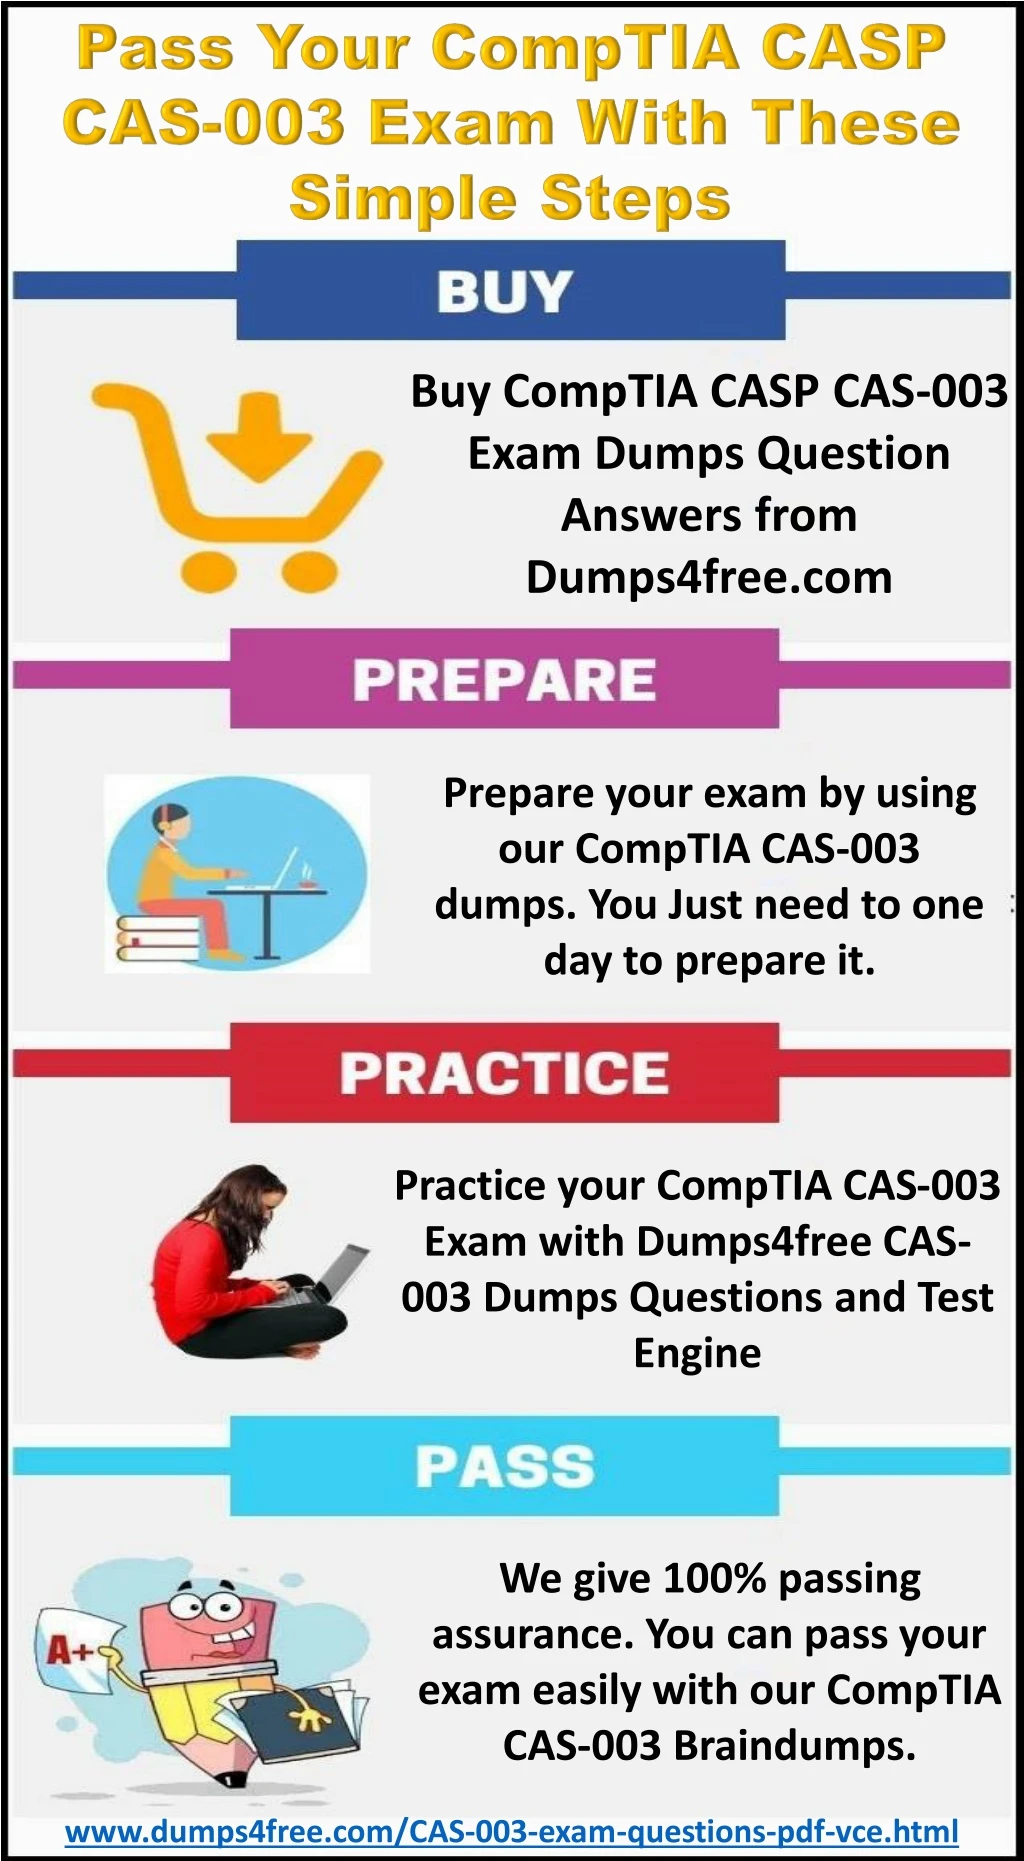 buy comptia casp cas 003 exam dumps question